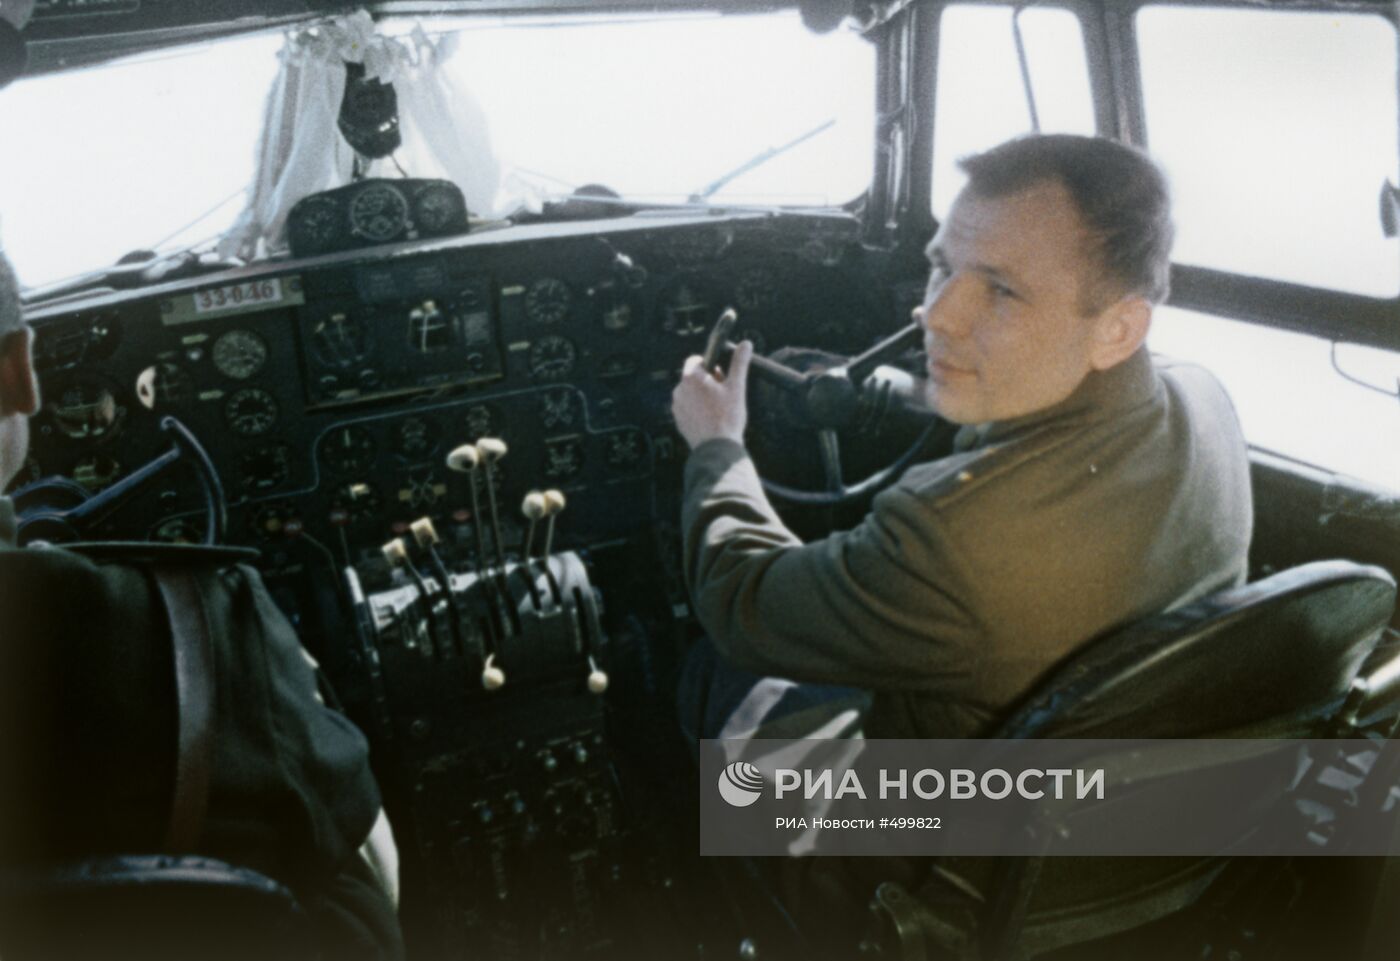 Юрий Гагарин перед полетом в космос